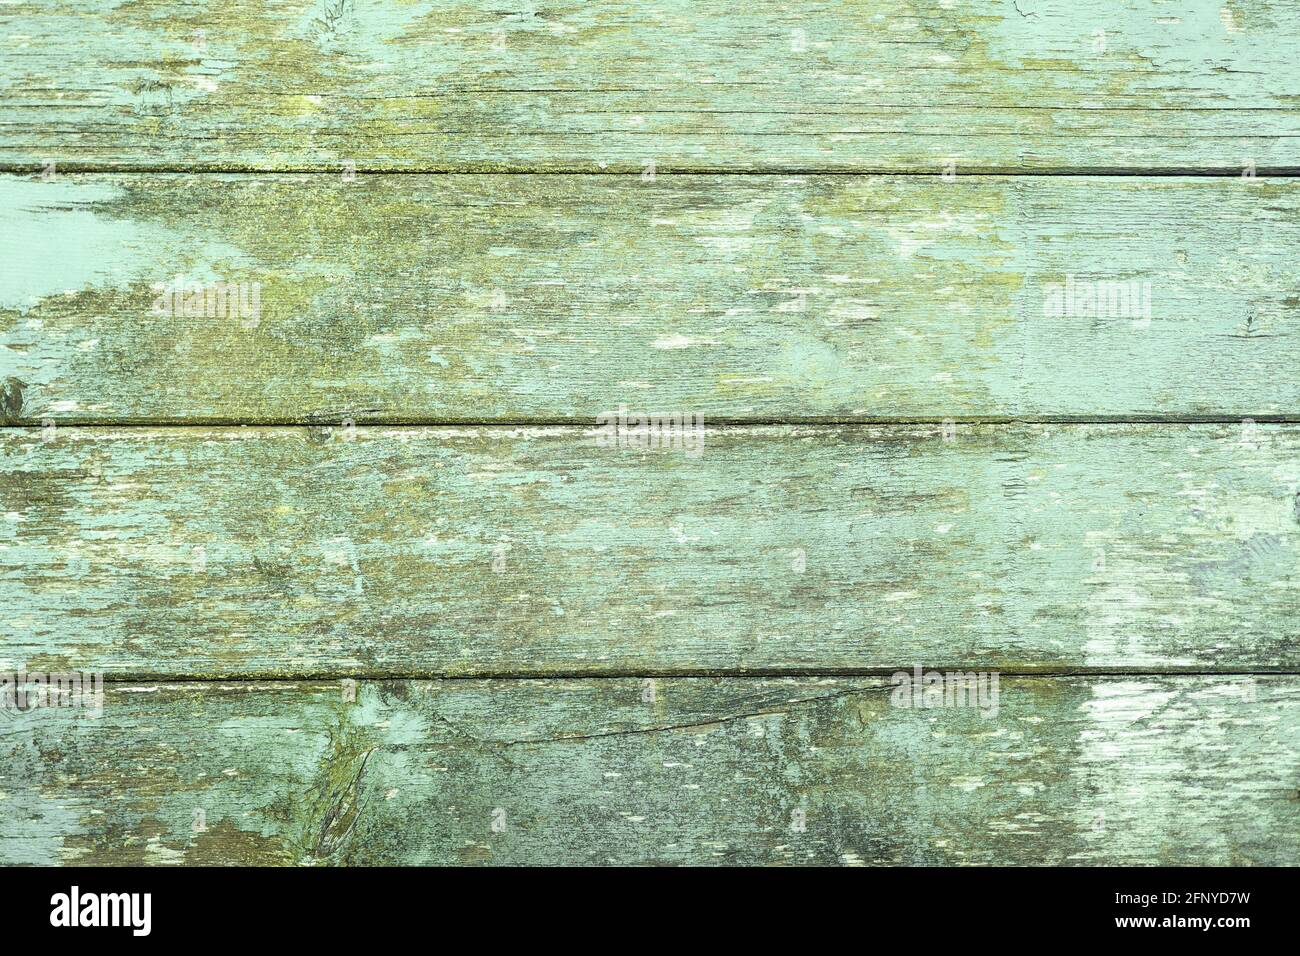 Holzhintergrund mit grünen horizontalen Planken und abgebroschter Farbe Stockfoto